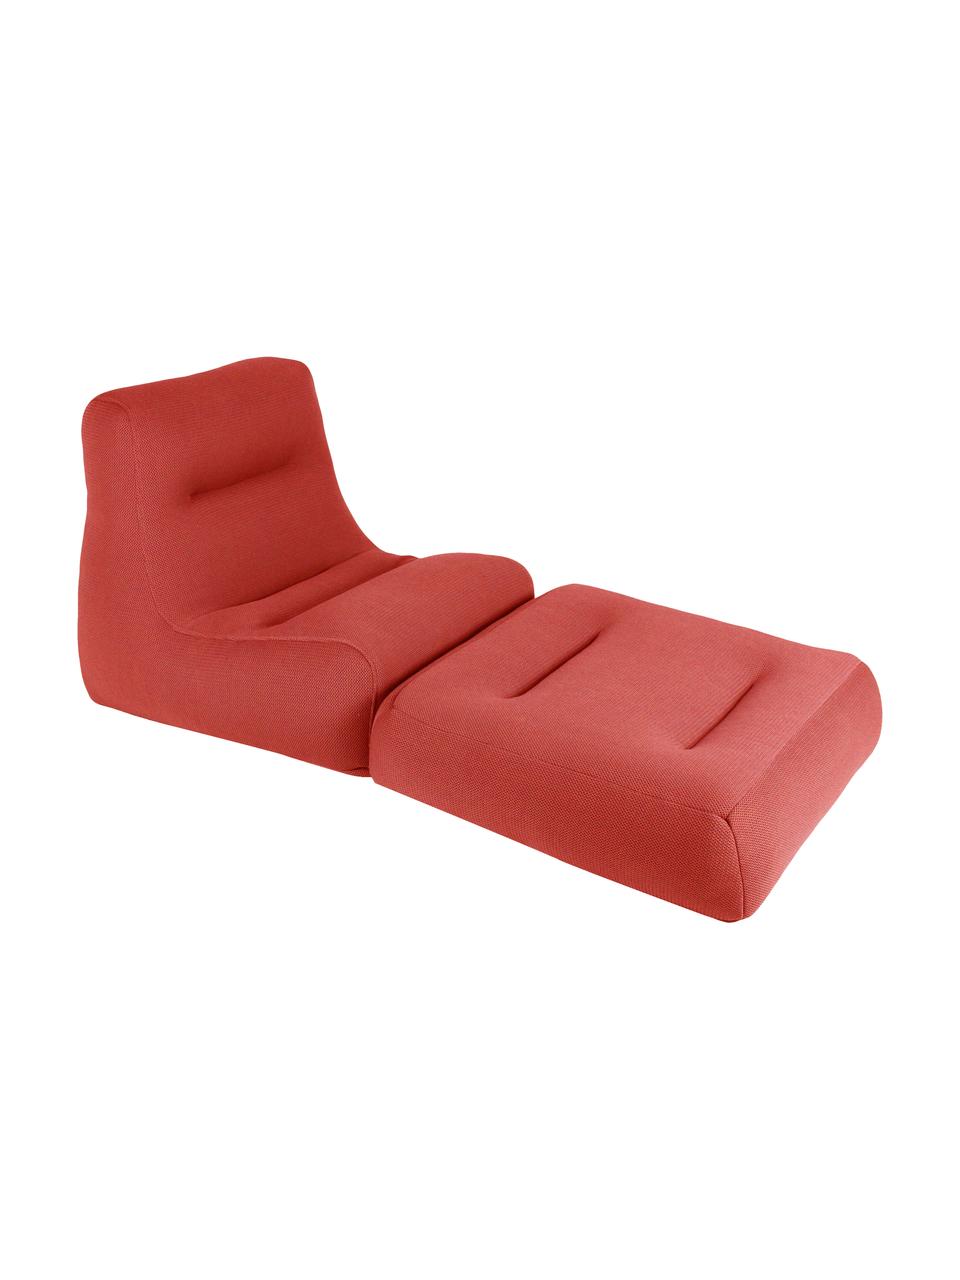 Fauteuil lounge d'extérieur avec fonction chaise longue Sit Pool
, Rouge corail, larg. 75 x haut. 85 cm